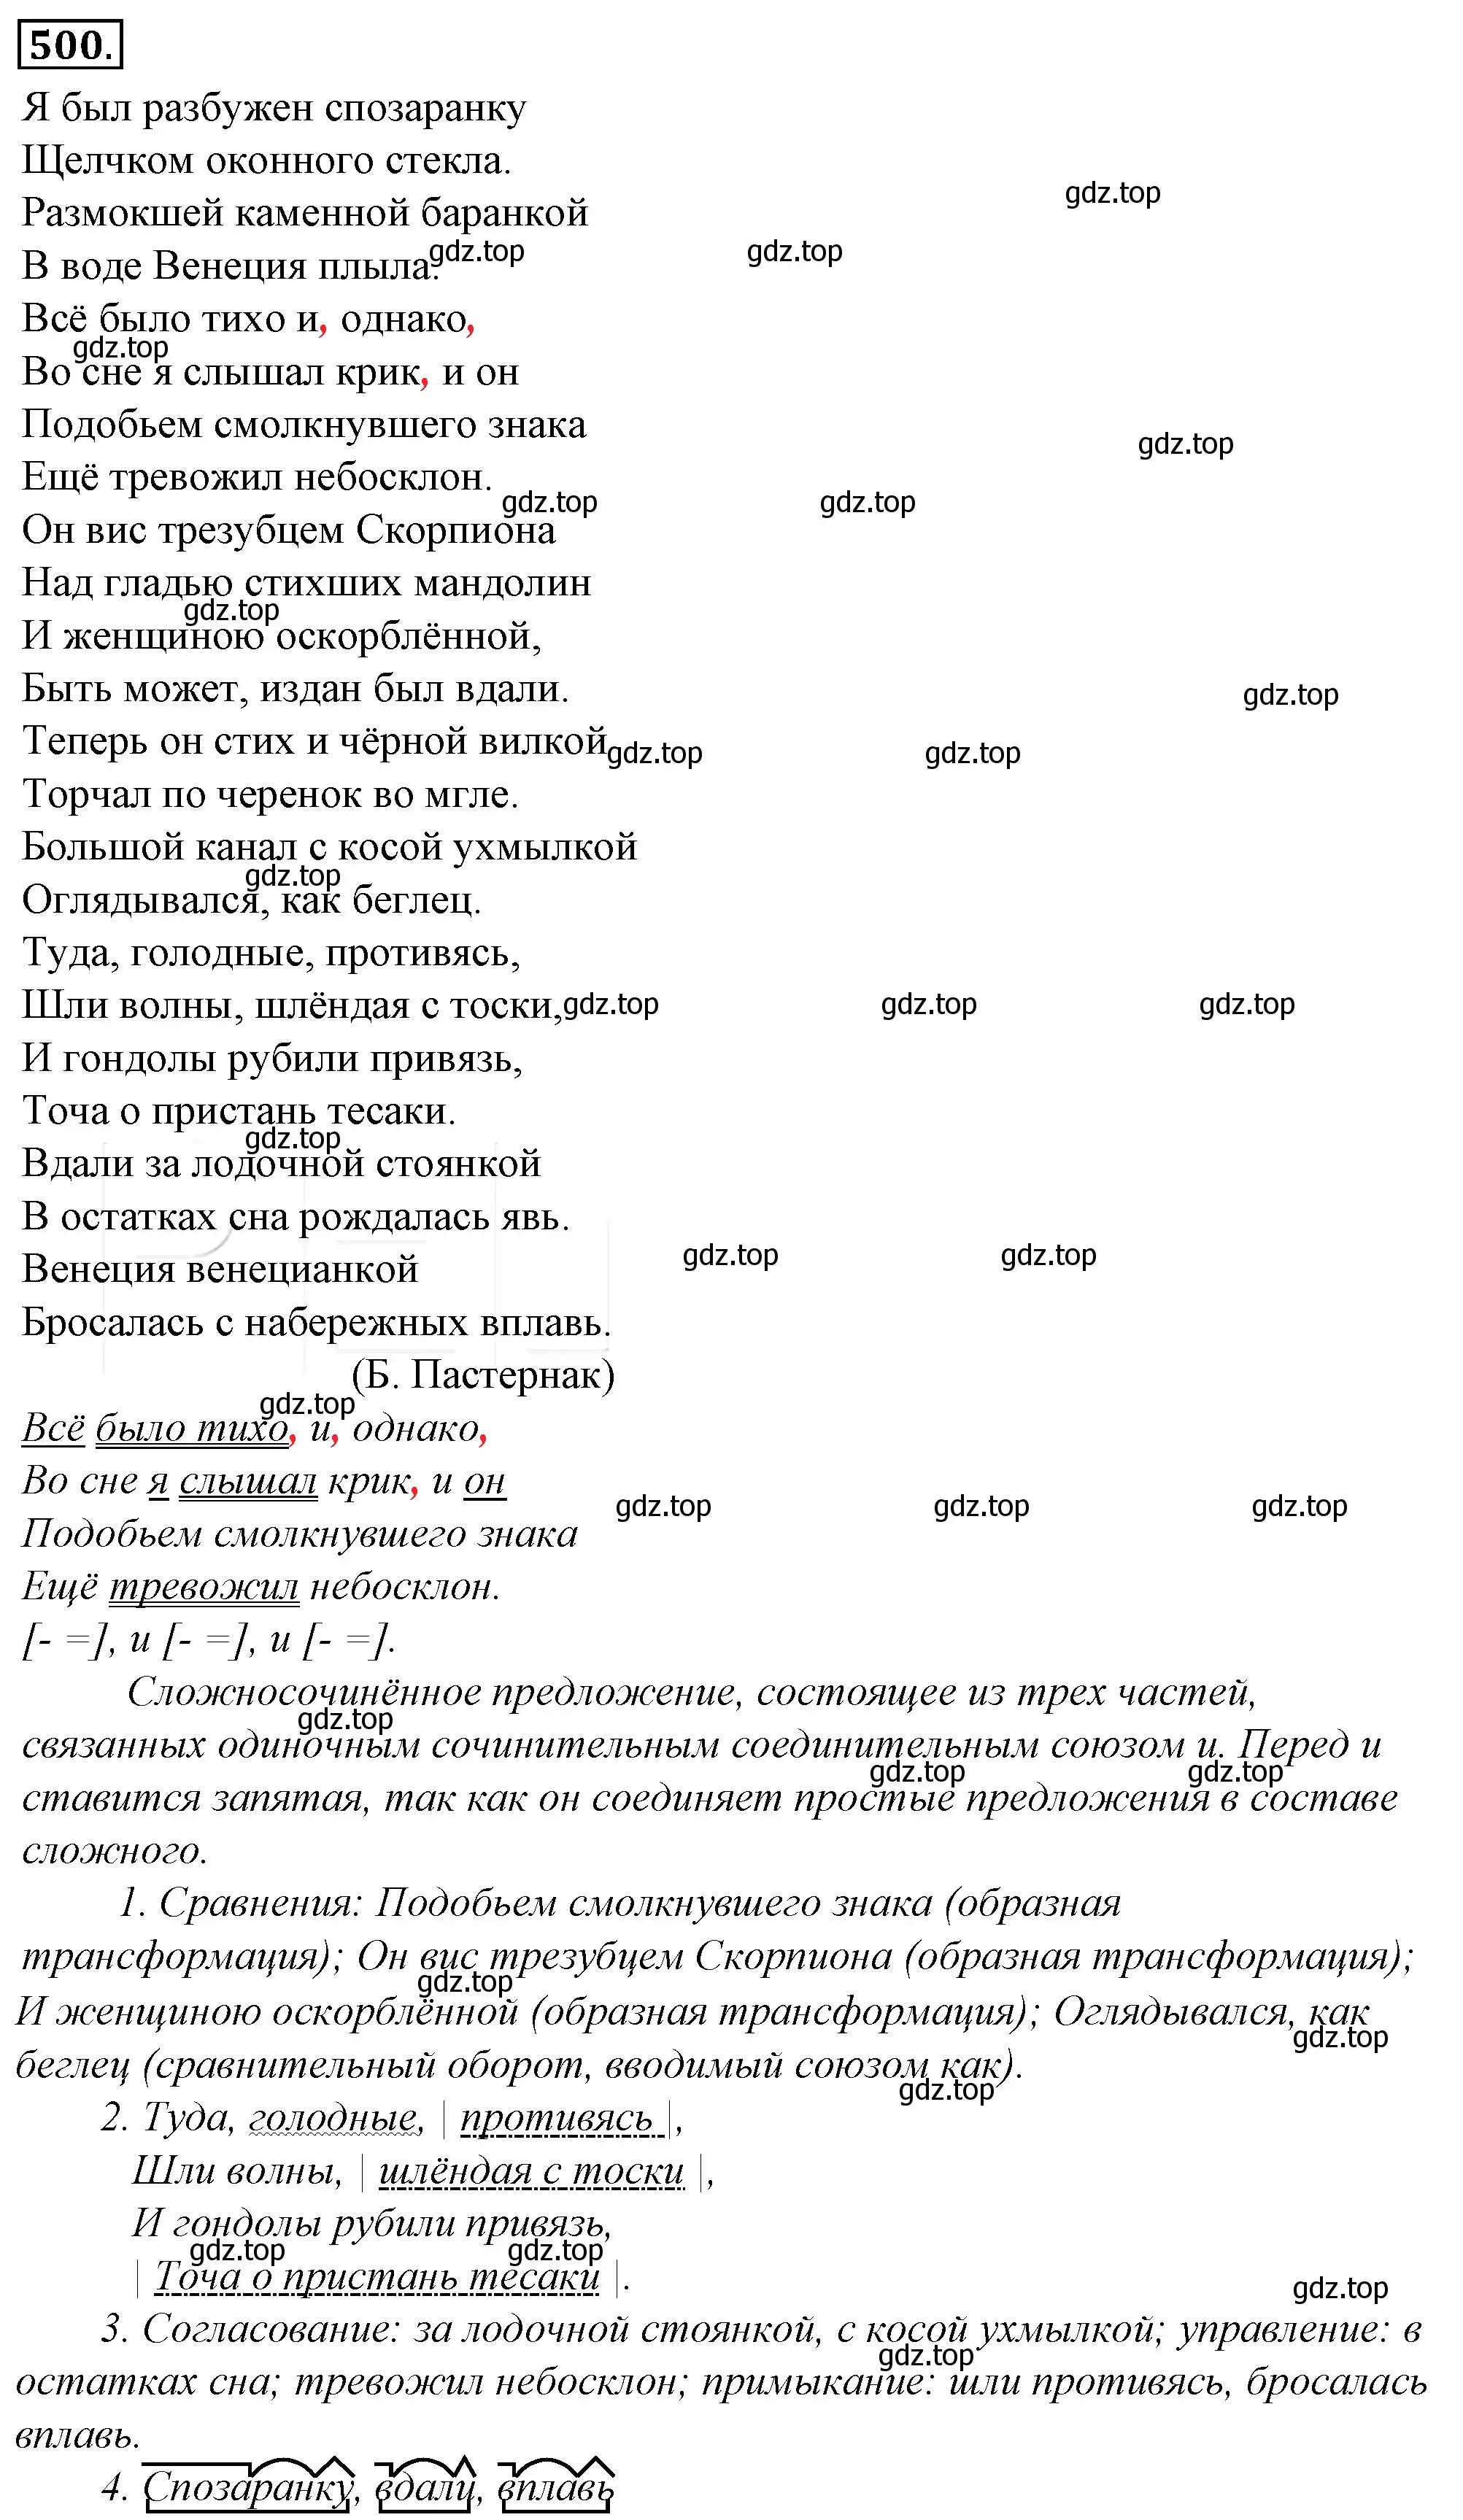 Решение 4. номер 165 (страница 229) гдз по русскому языку 10-11 класс Гольцова, Шамшин, учебник 2 часть